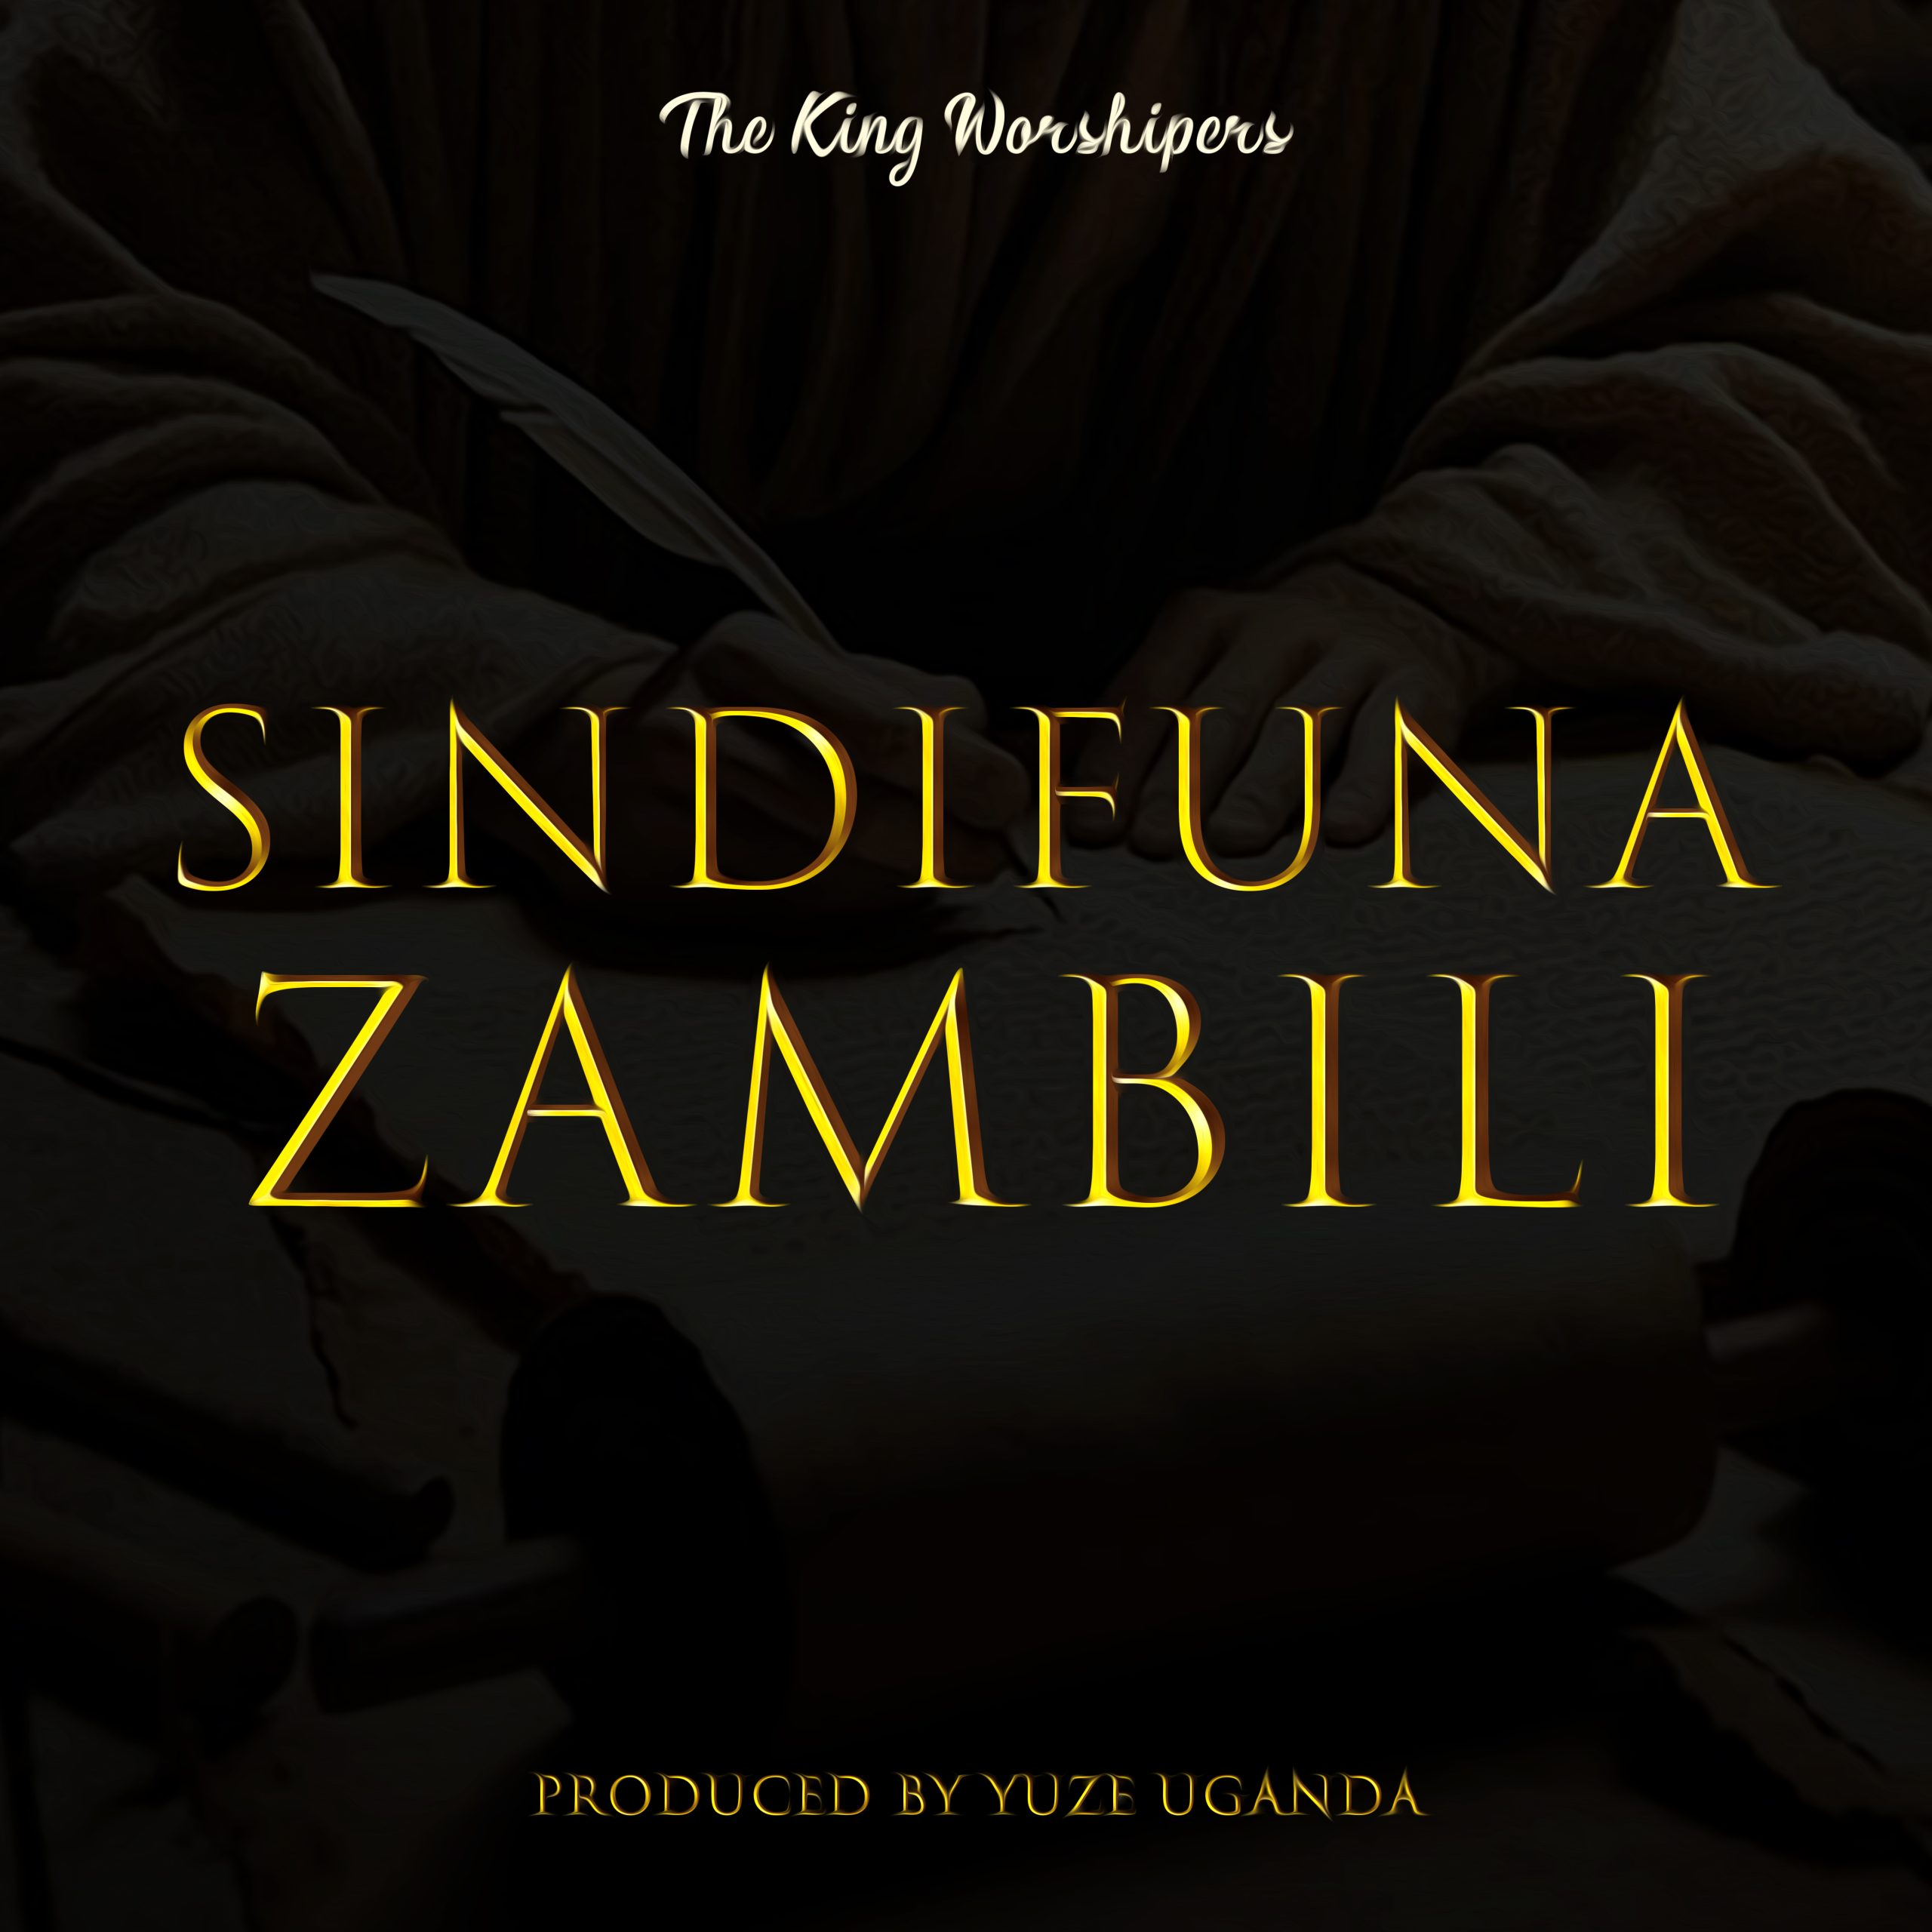 The King Worshipers – Sindifuna Zambiri